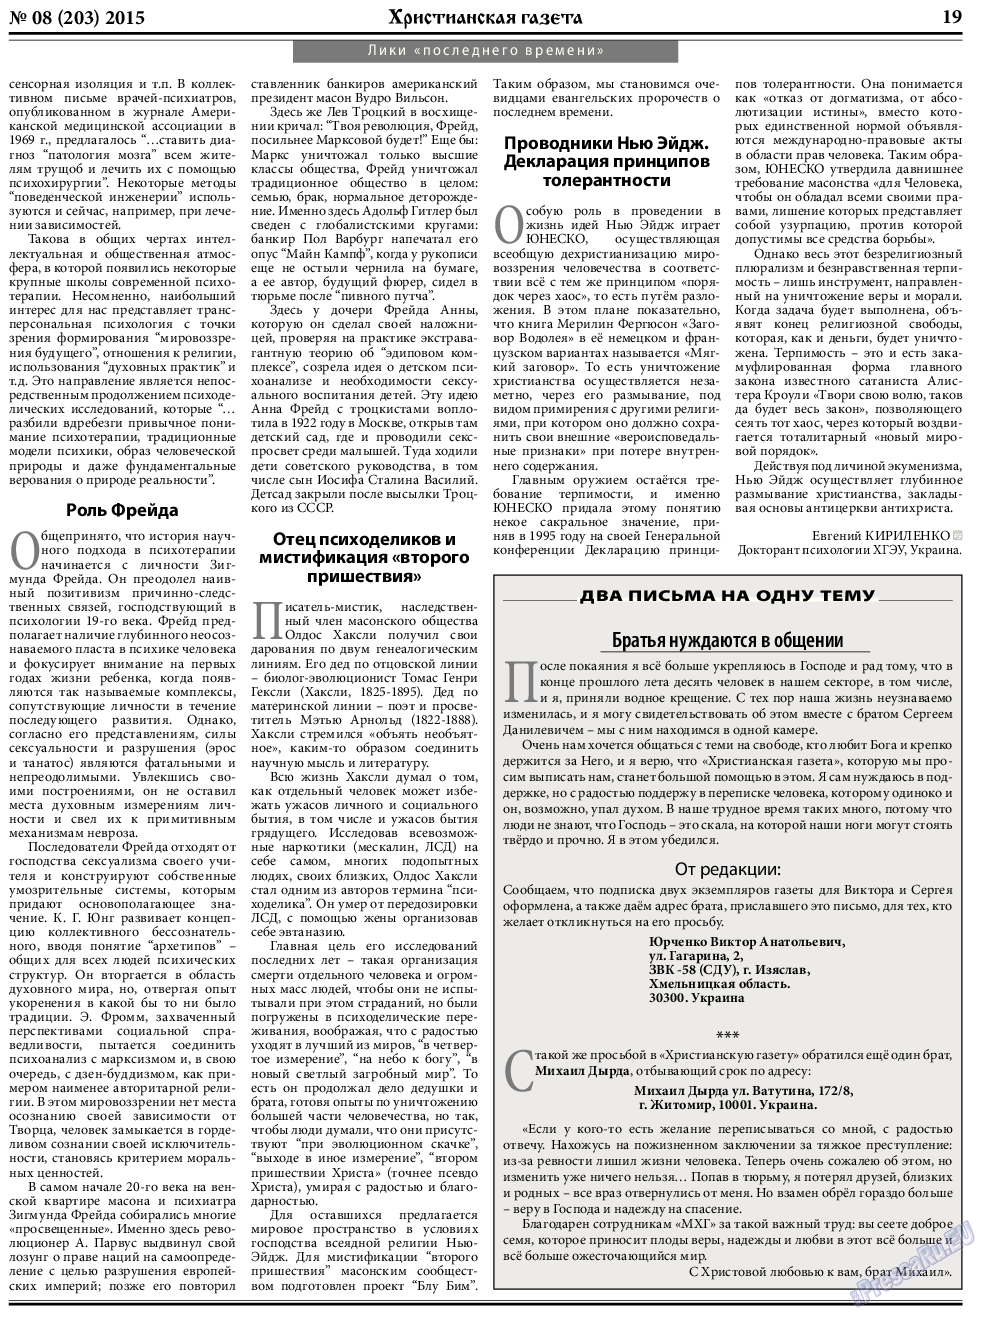 Христианская газета, газета. 2015 №8 стр.27